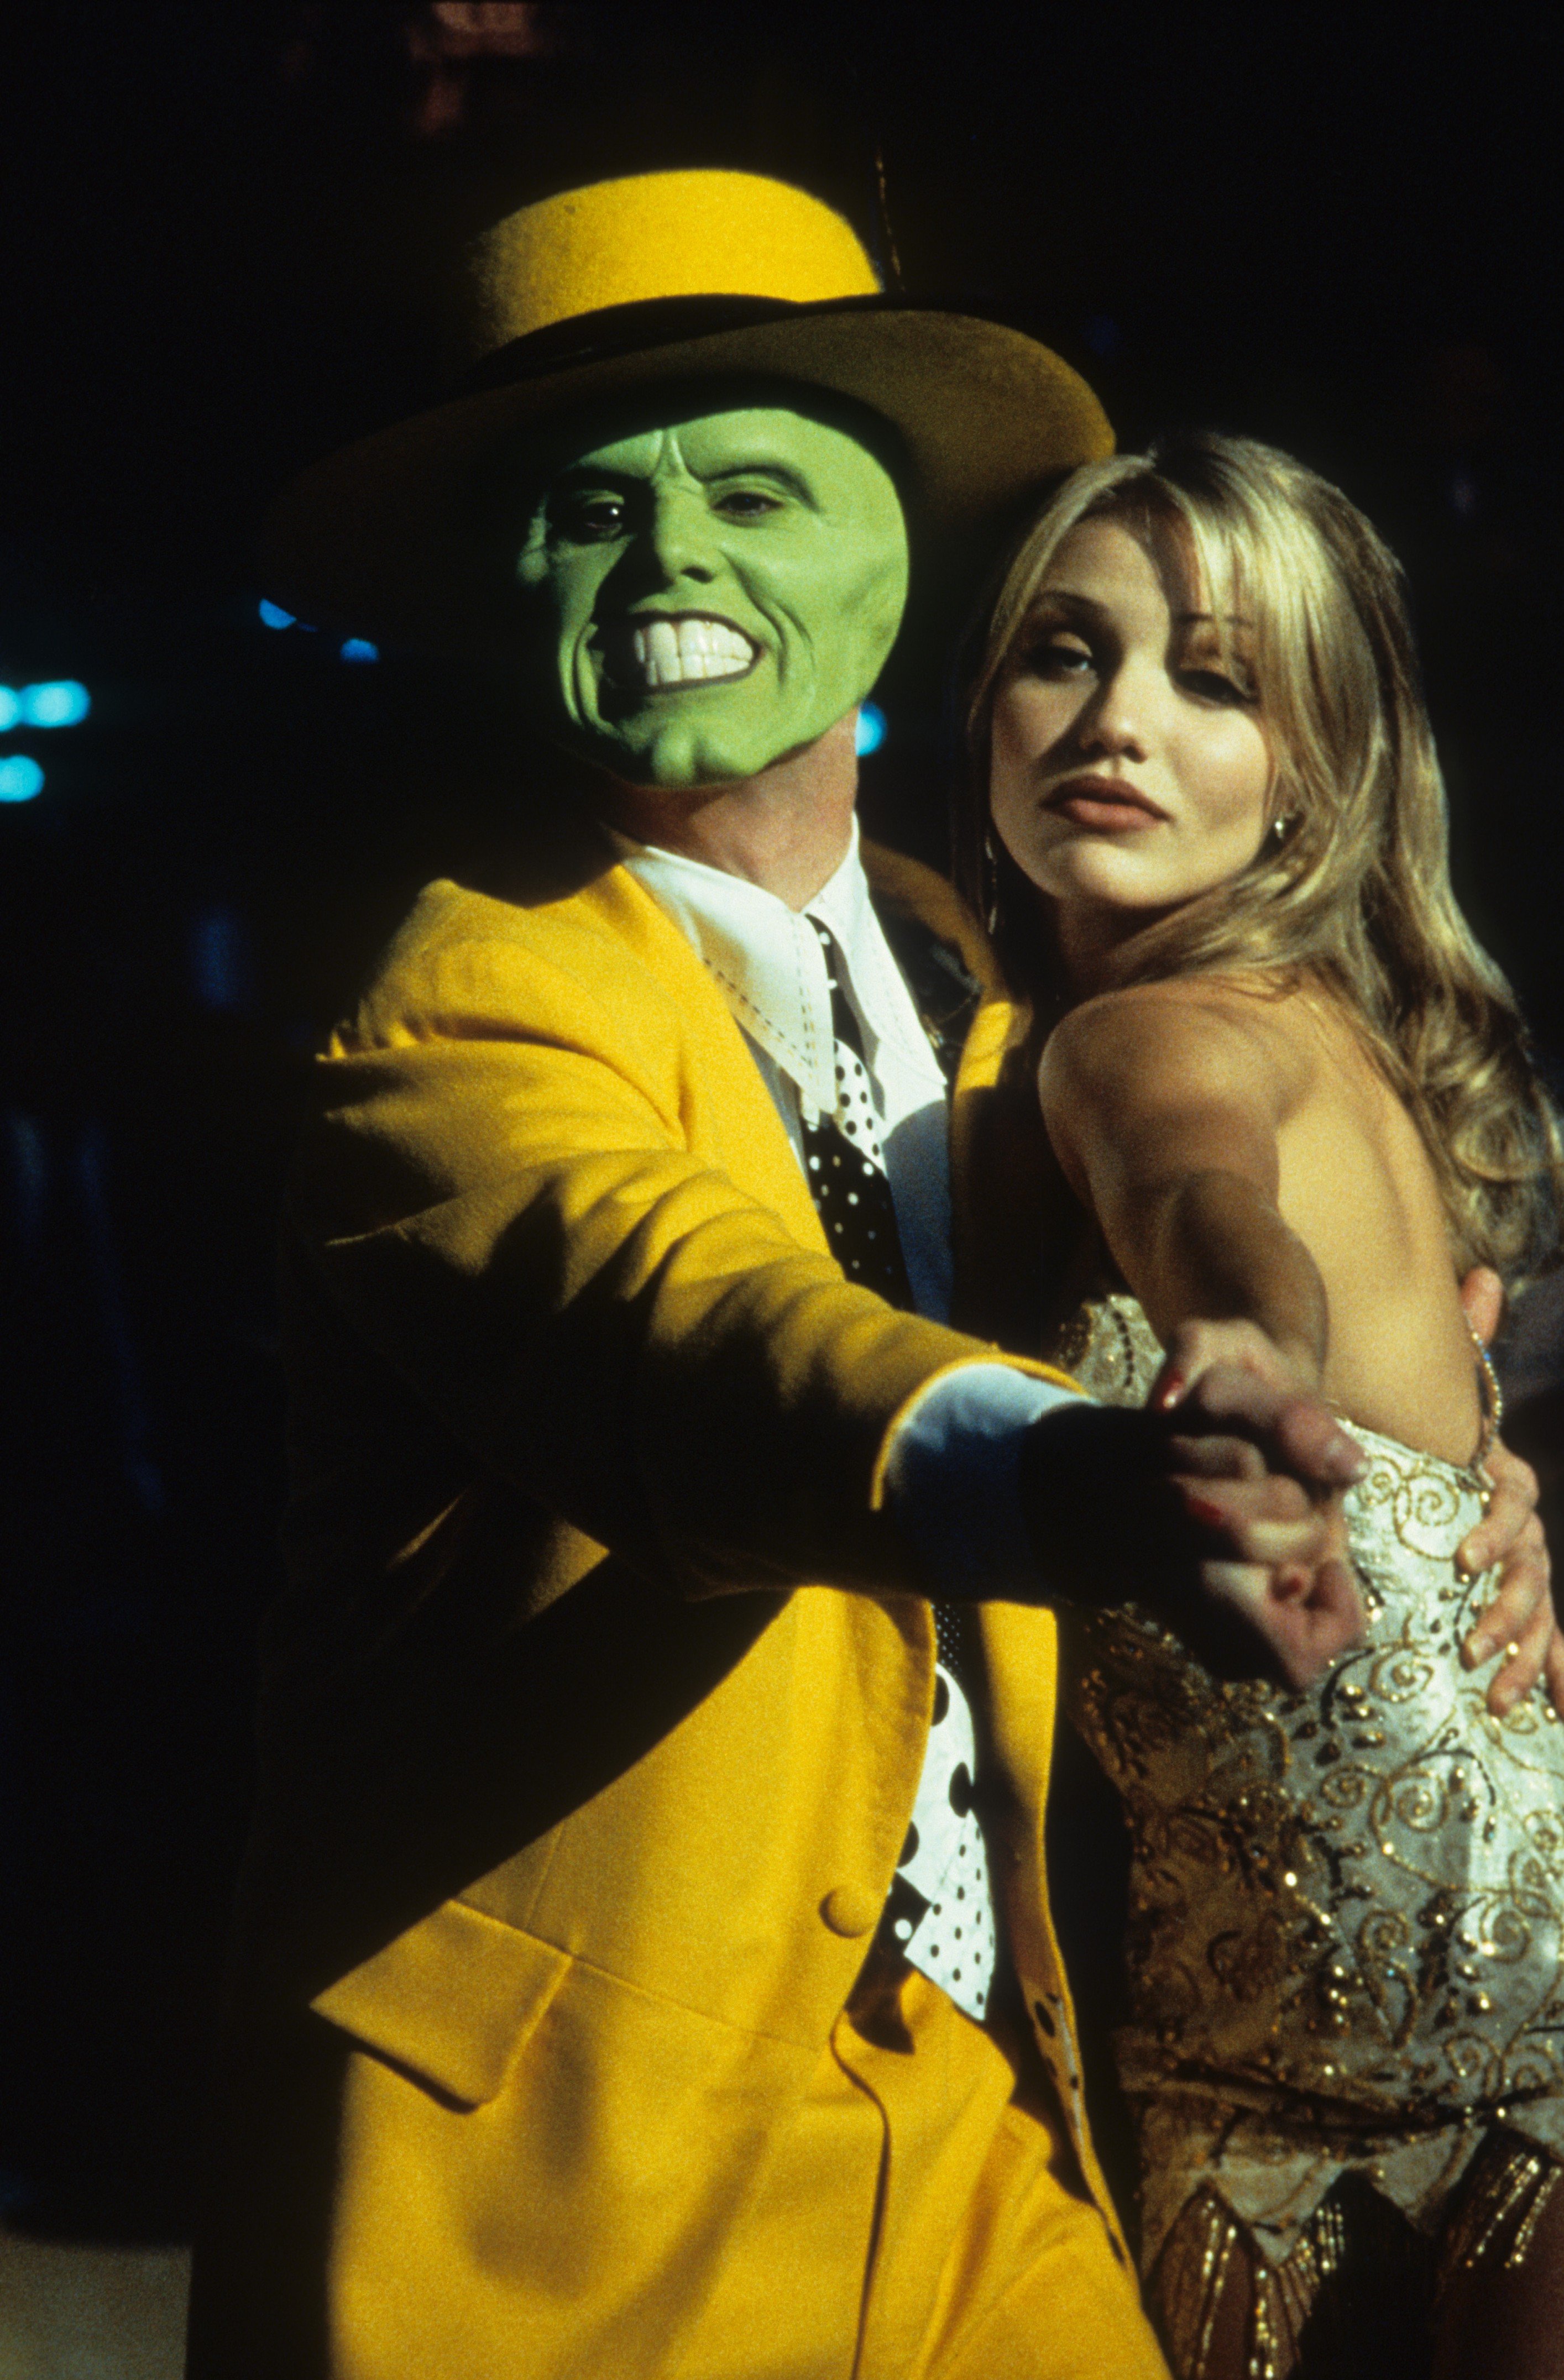 Jim Carrey bailando con Cameron Diaz en una escena de la película "The Mask" en 1994 | Foto: Getty Images